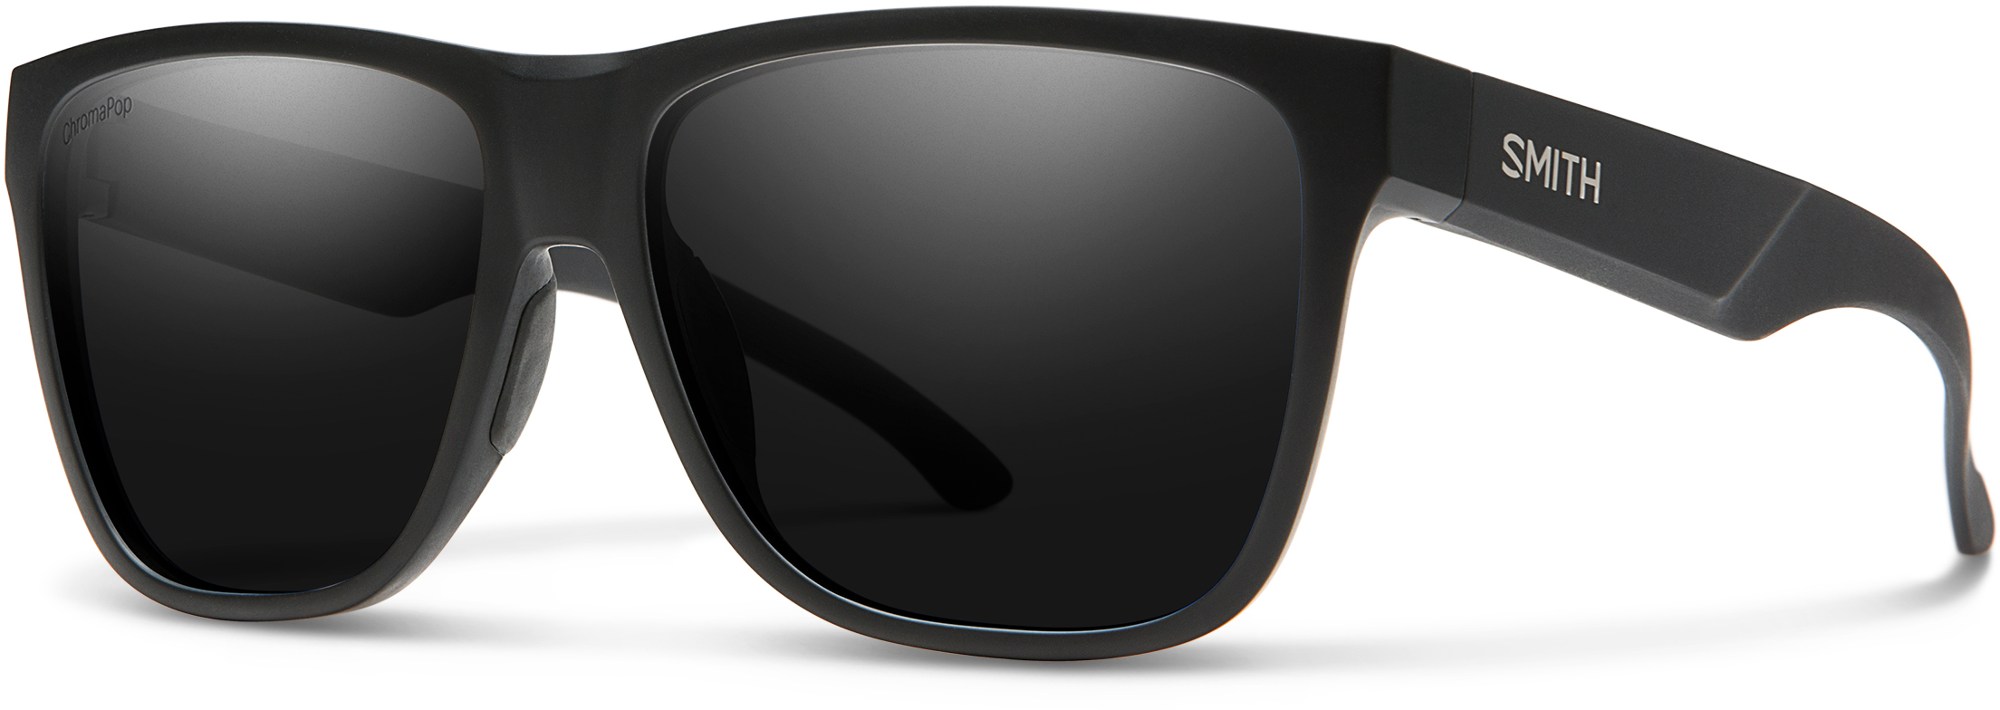 цена Поляризованные солнцезащитные очки Lowdown XL 2 ChromaPop Smith, черный